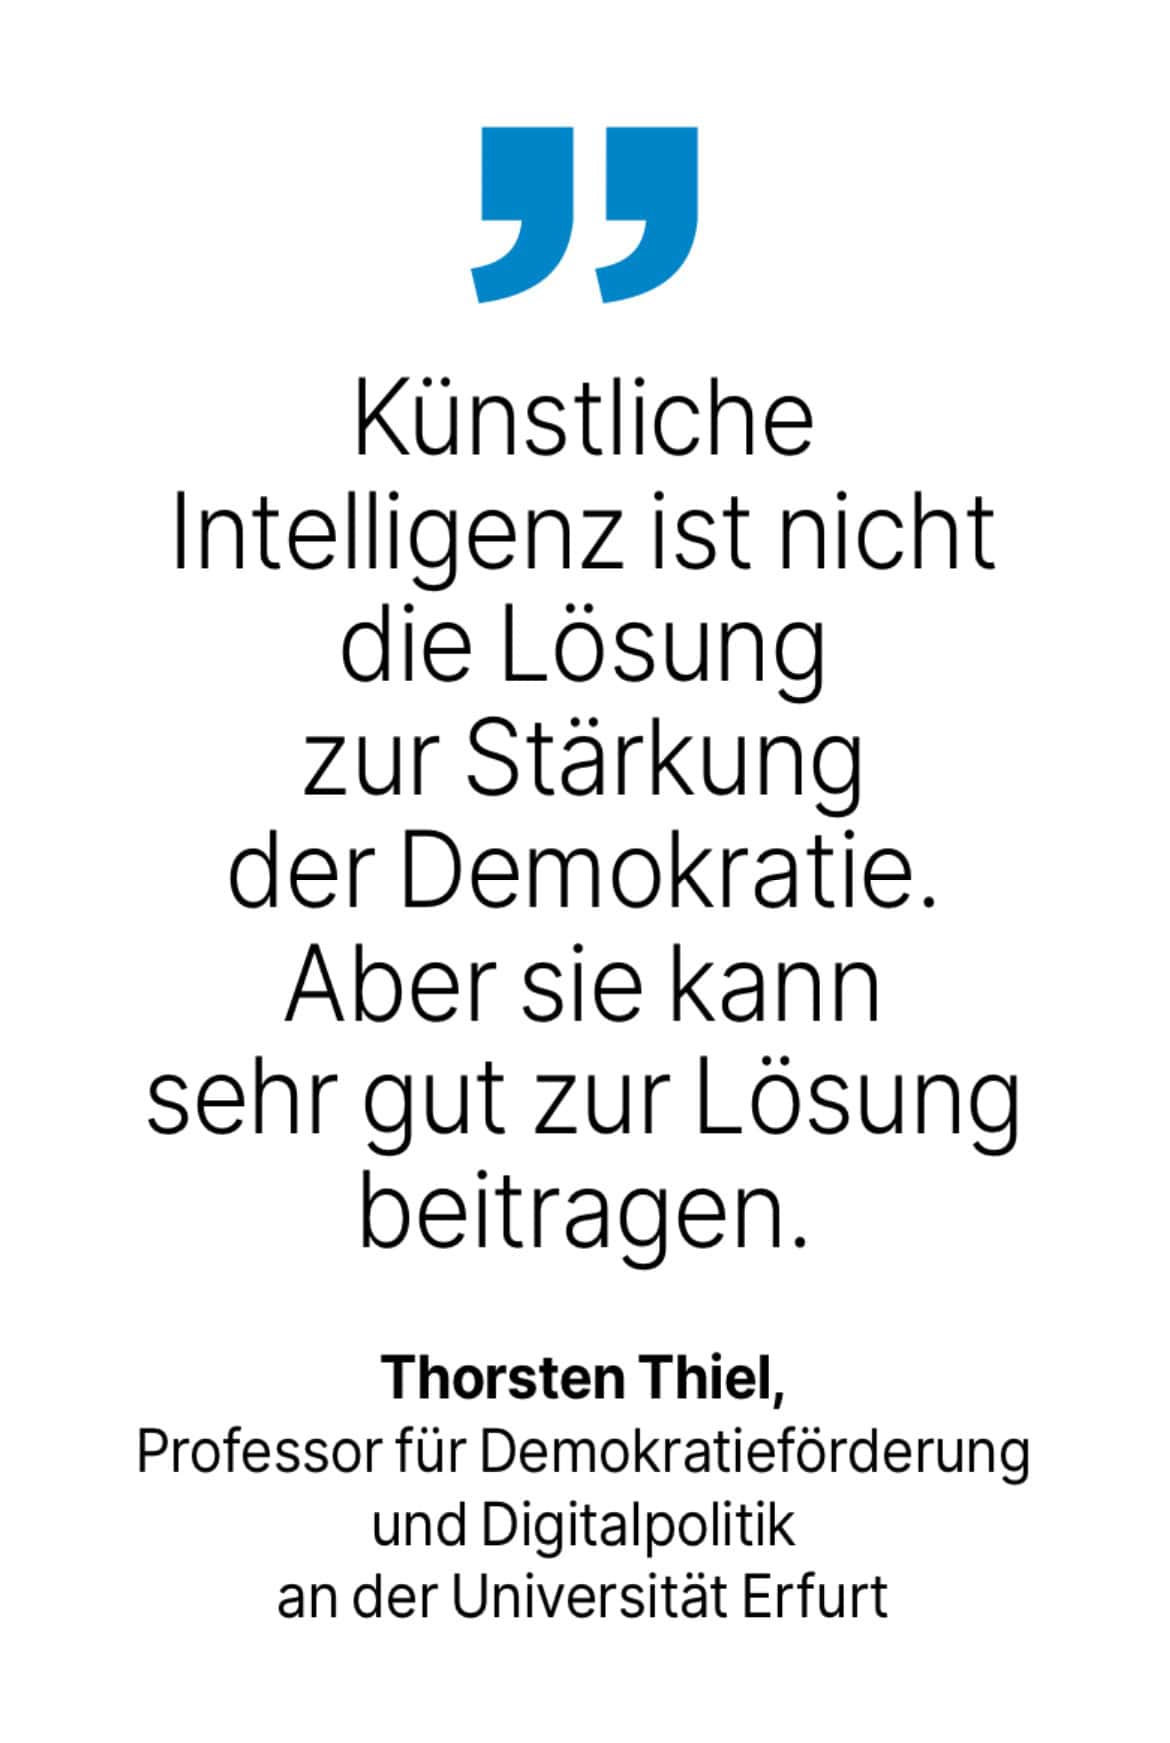 Thorsten Thiel, Professor für Demokratieförderung und Digitalpolitik an der Universität Erfurt: Künstliche
Intelligenz ist nicht die Lösung zur Stärkung der Demokratie.
Aber sie kann sehr gut zur Lösung beitragen.